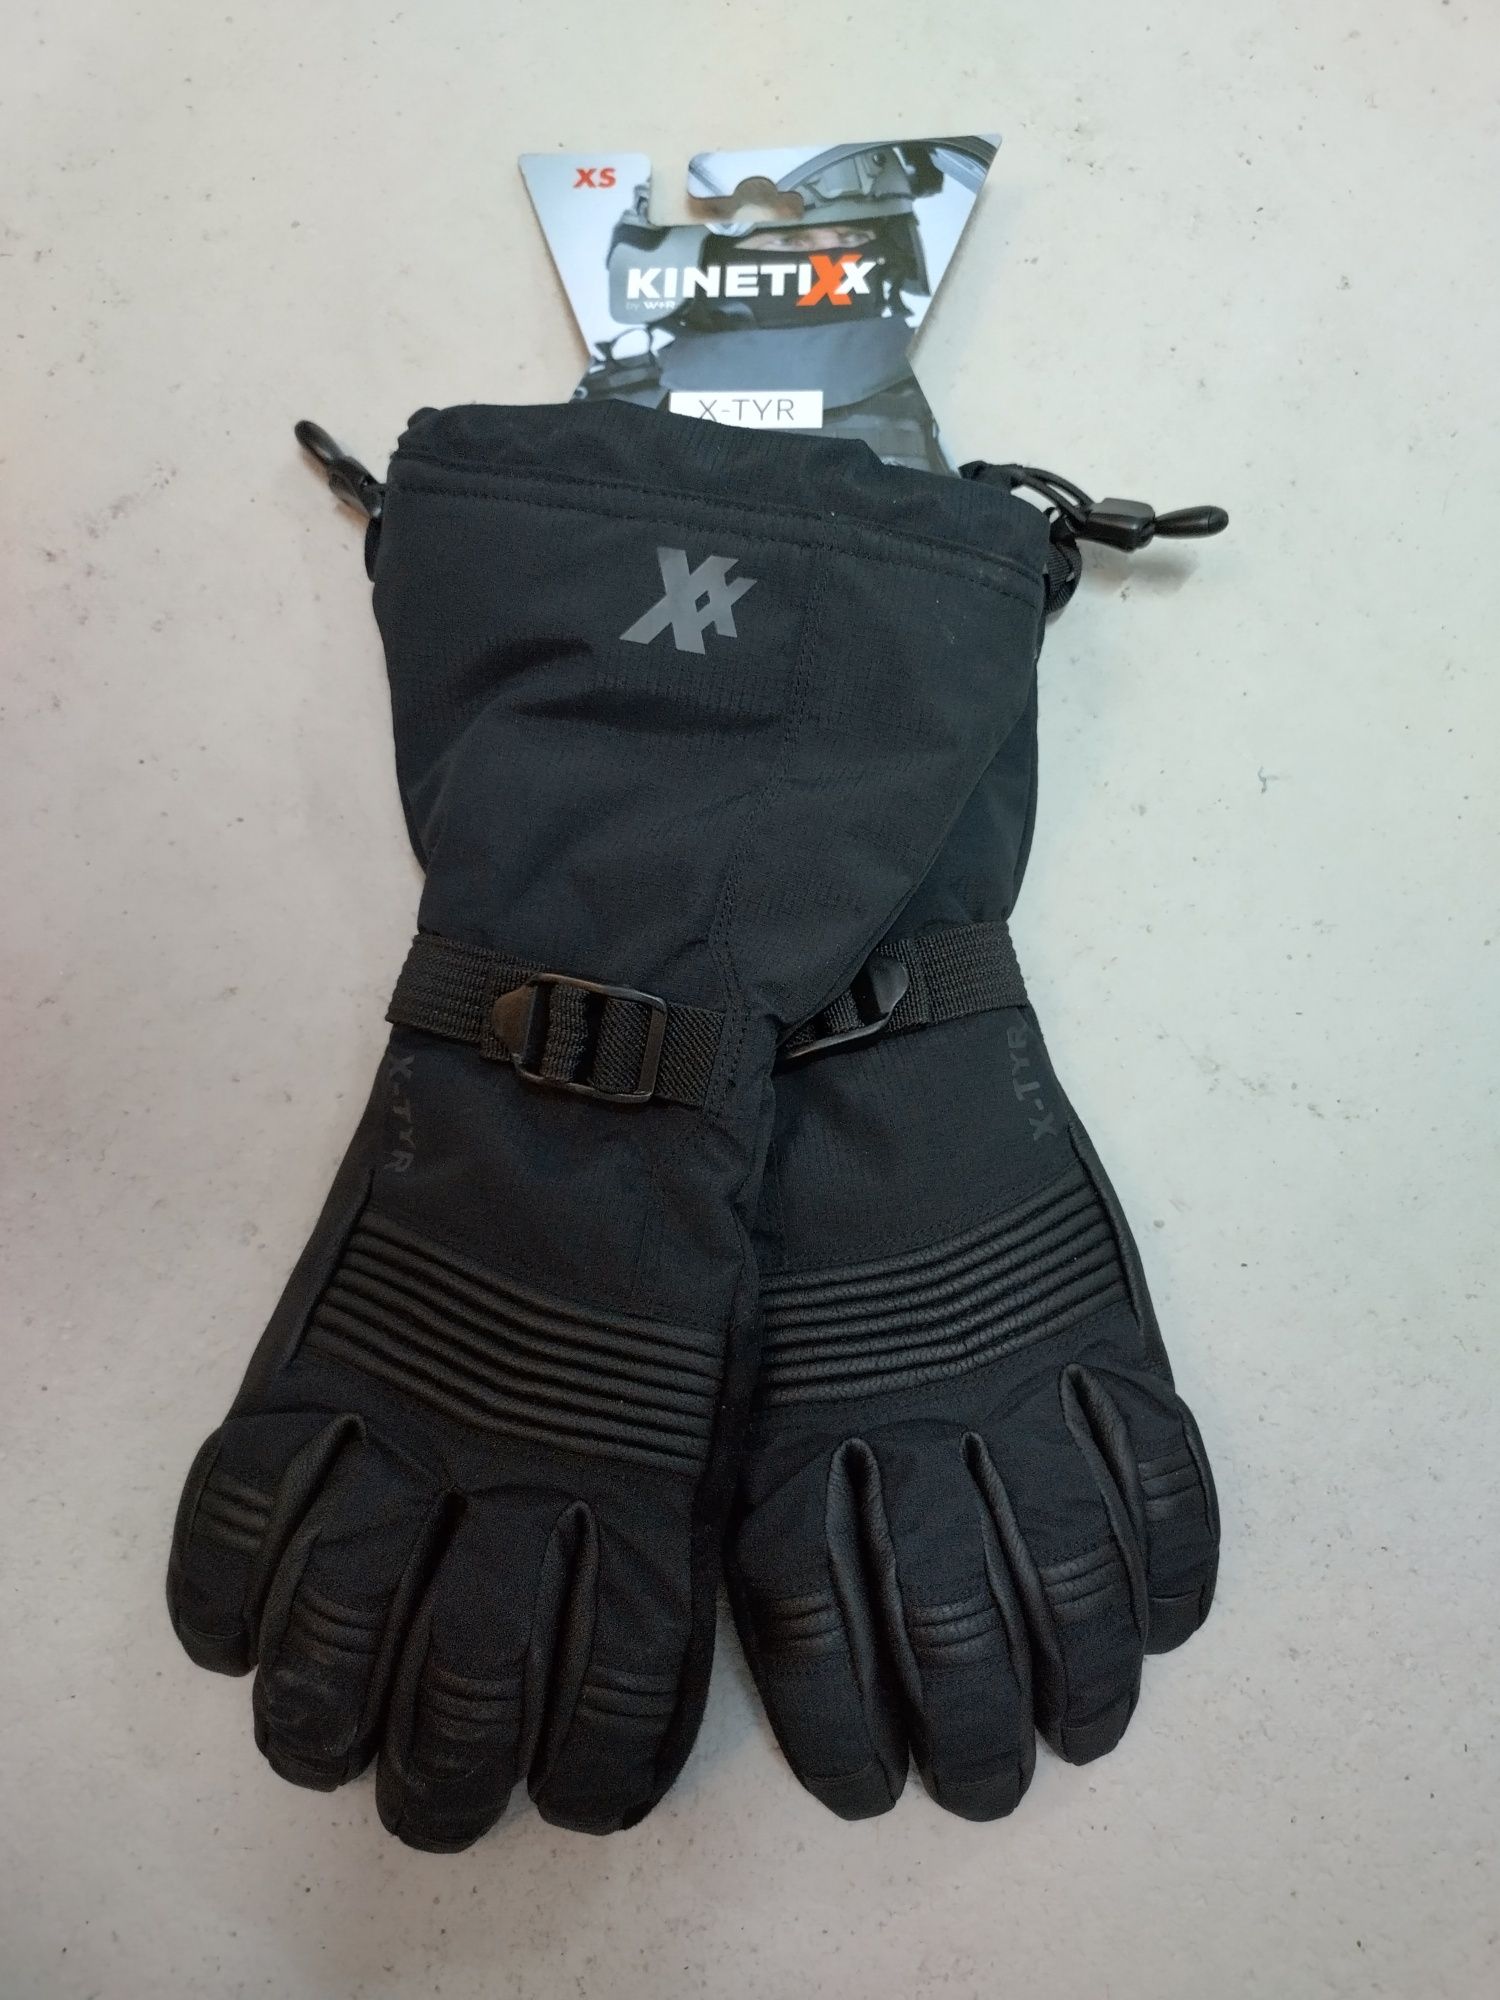 Kinetixx X-TYR zimowe rękawice taktyczne czarne - nowe